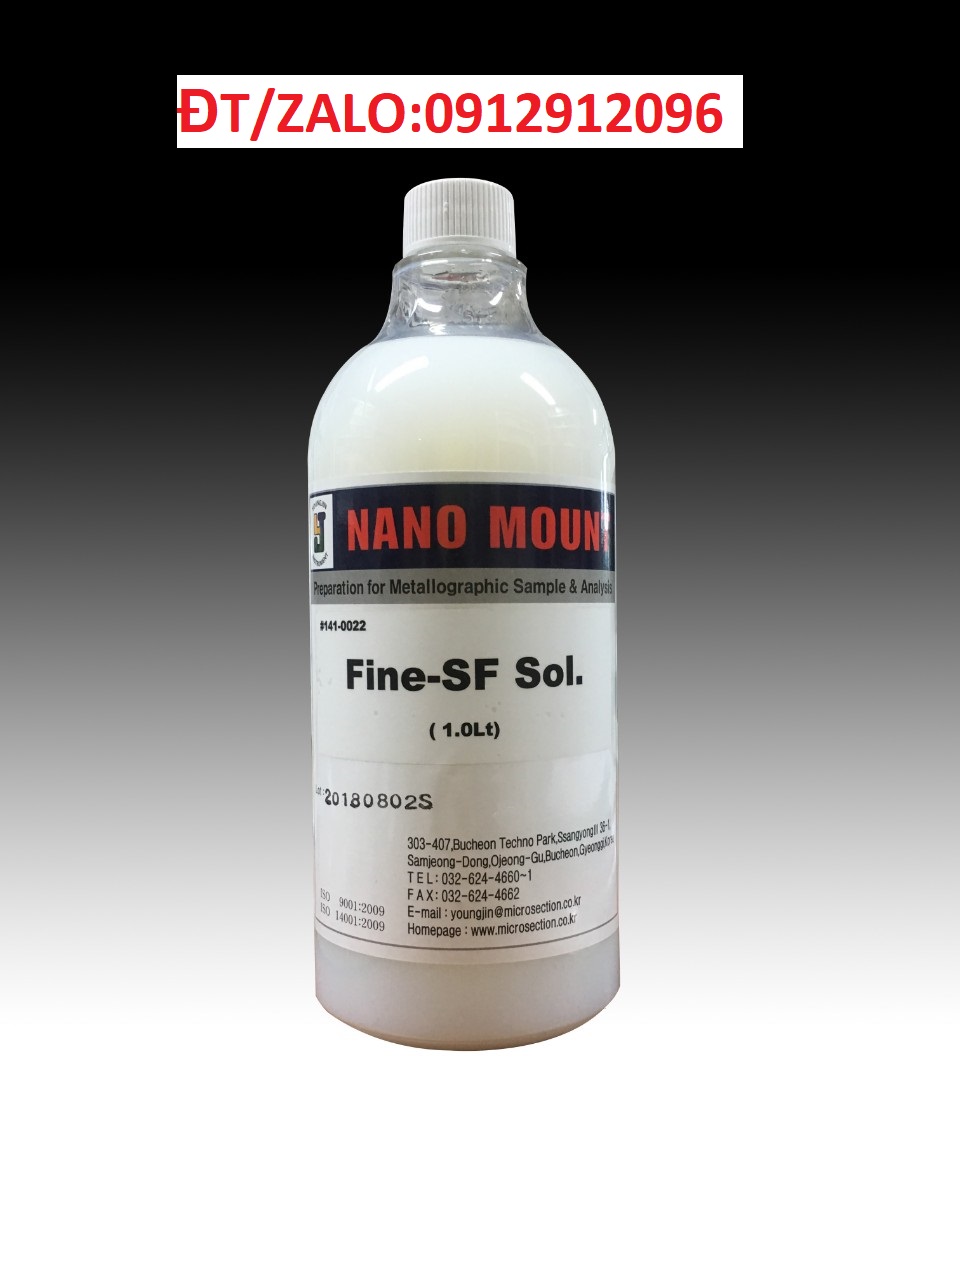 Fine-SF Sol